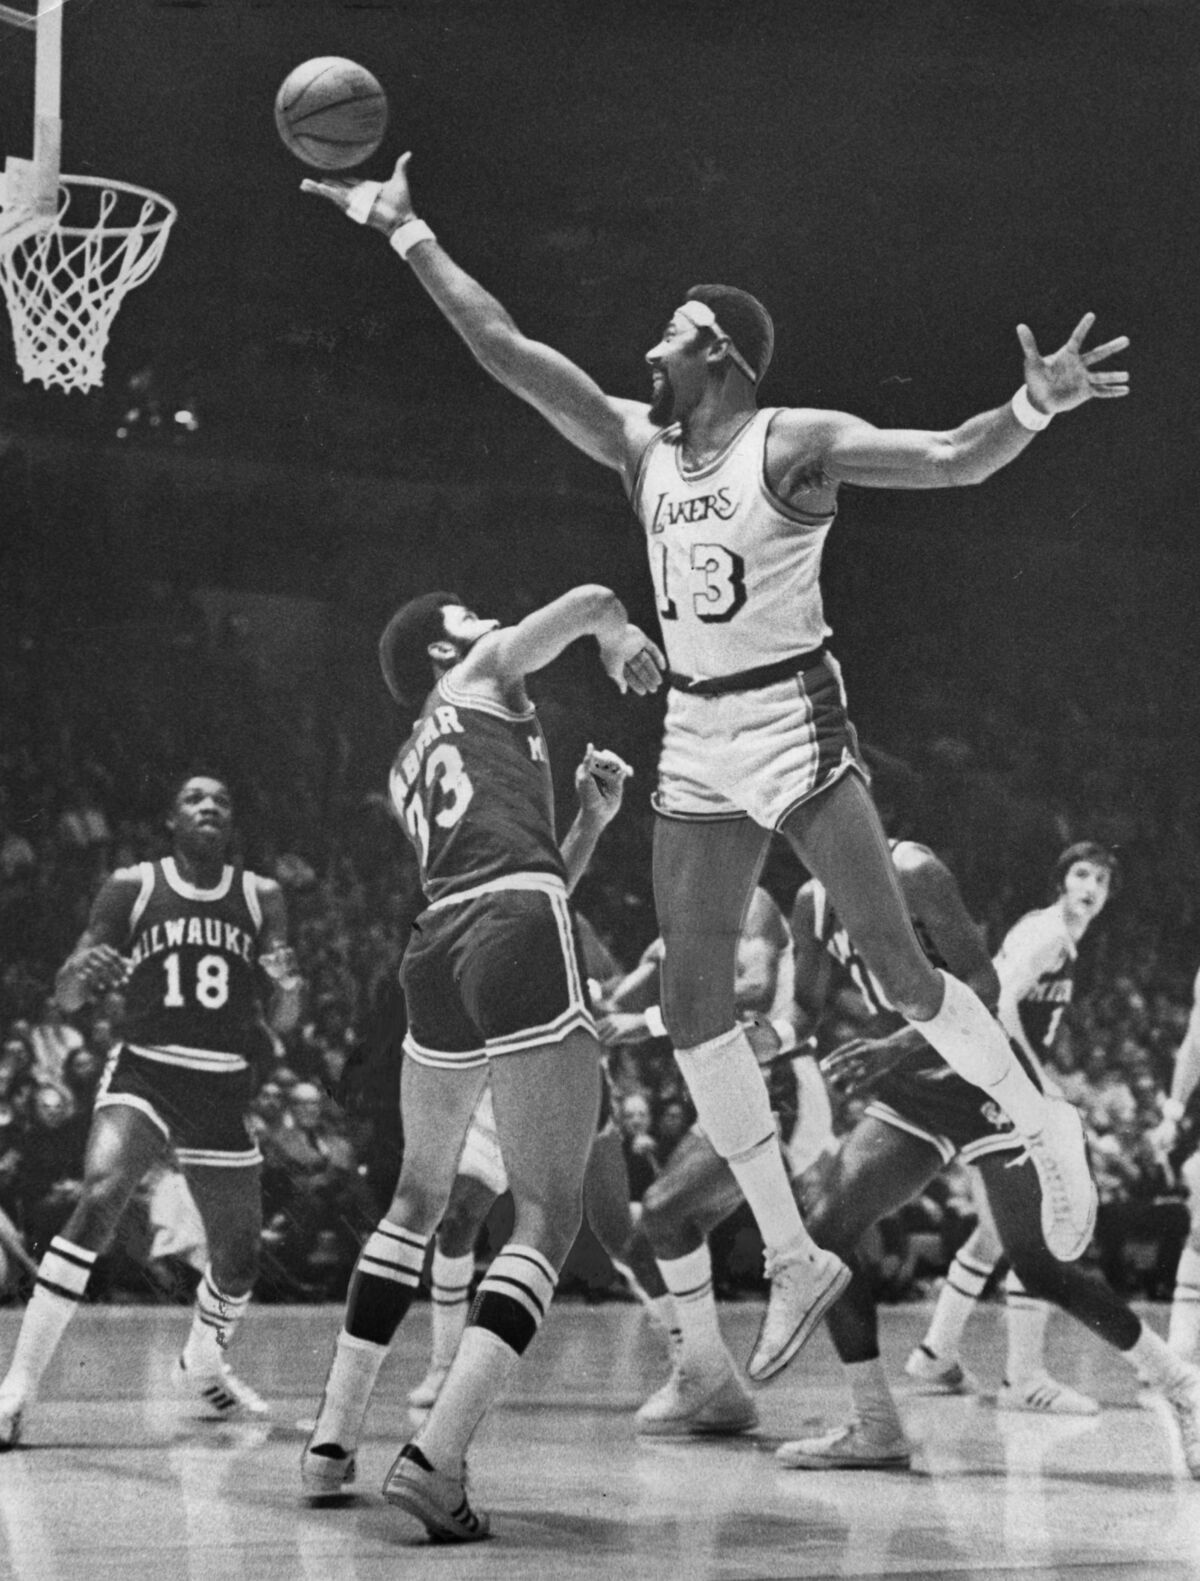 Lakers center Wilt Chamberlain elevates above Bucks center Kareem Abdul–Jabbar for a shot.